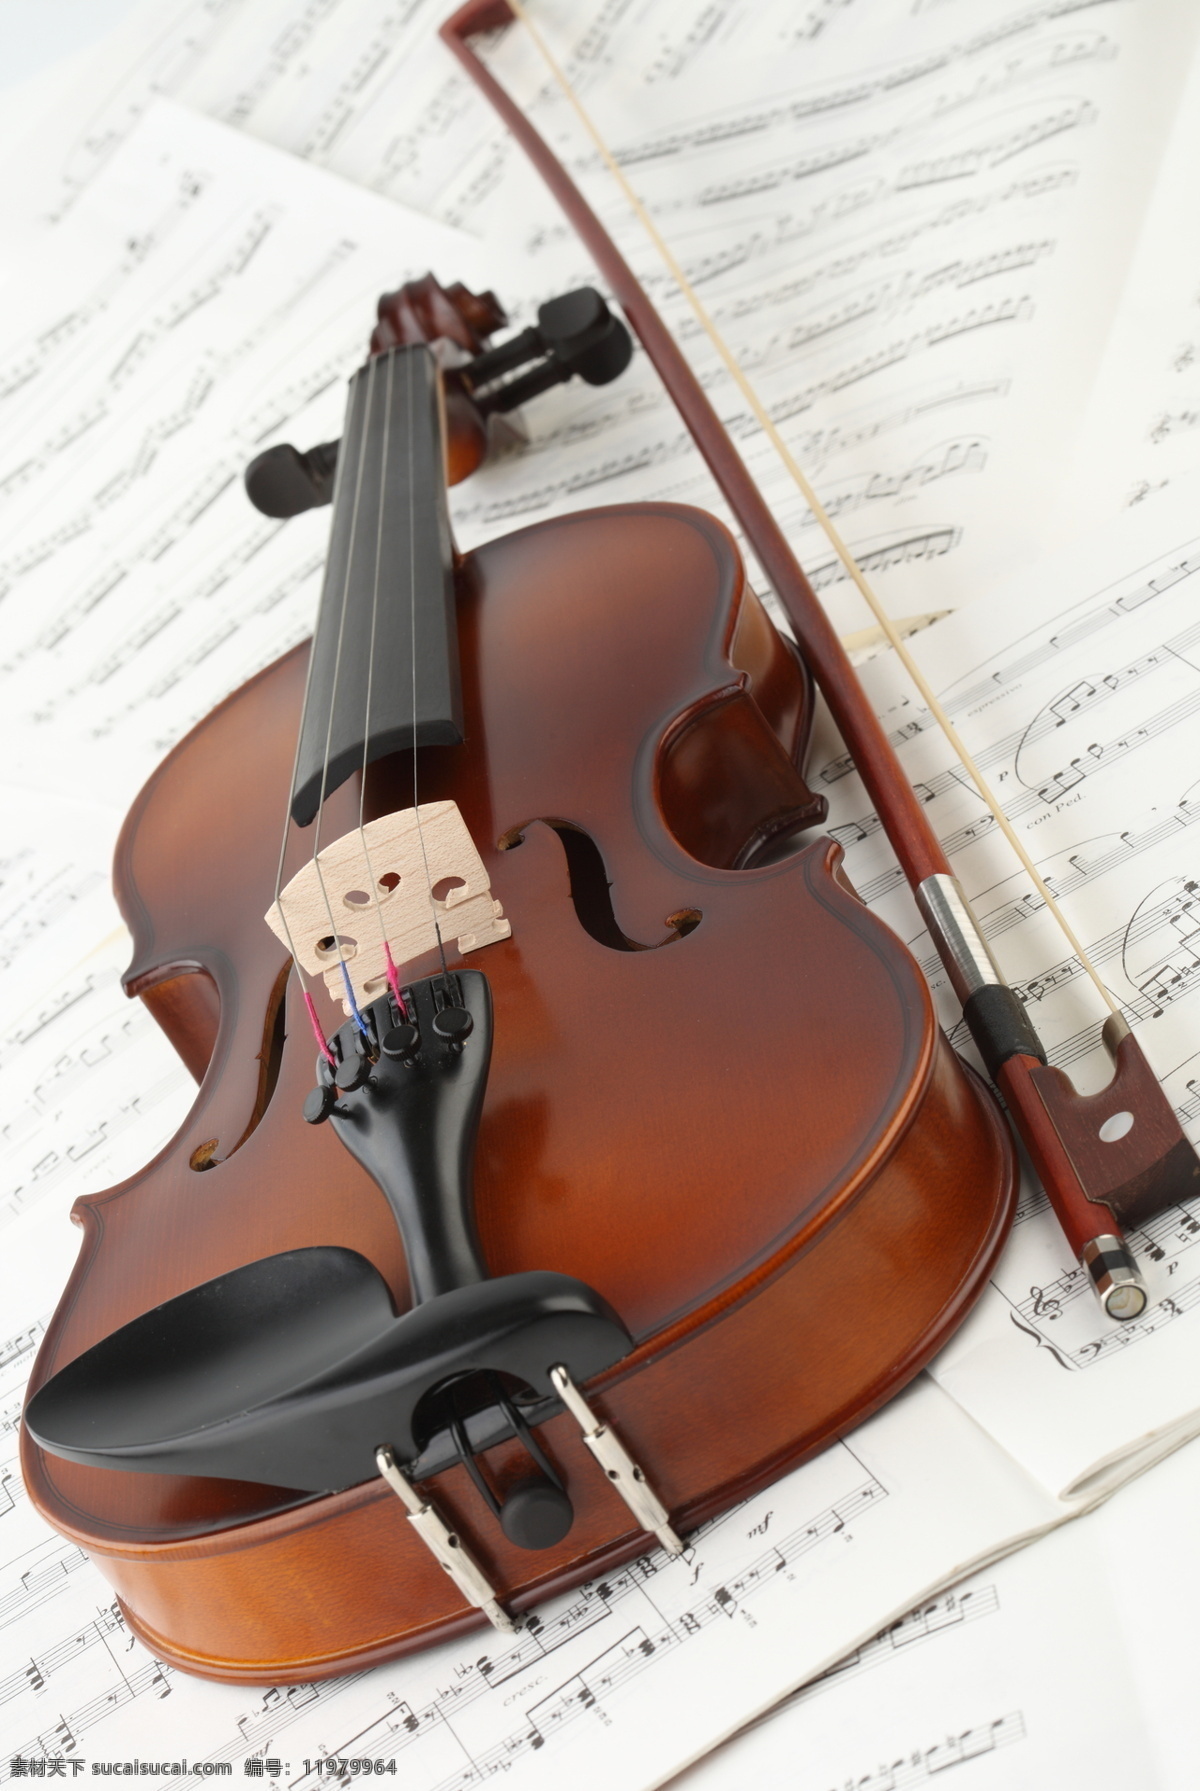 小提琴与音符 小提琴 乐谱 音符 中提琴 玫瑰 玫瑰花 鲜花 文化艺术 音乐 乐器 西洋乐器 影音娱乐 生活百科 白色